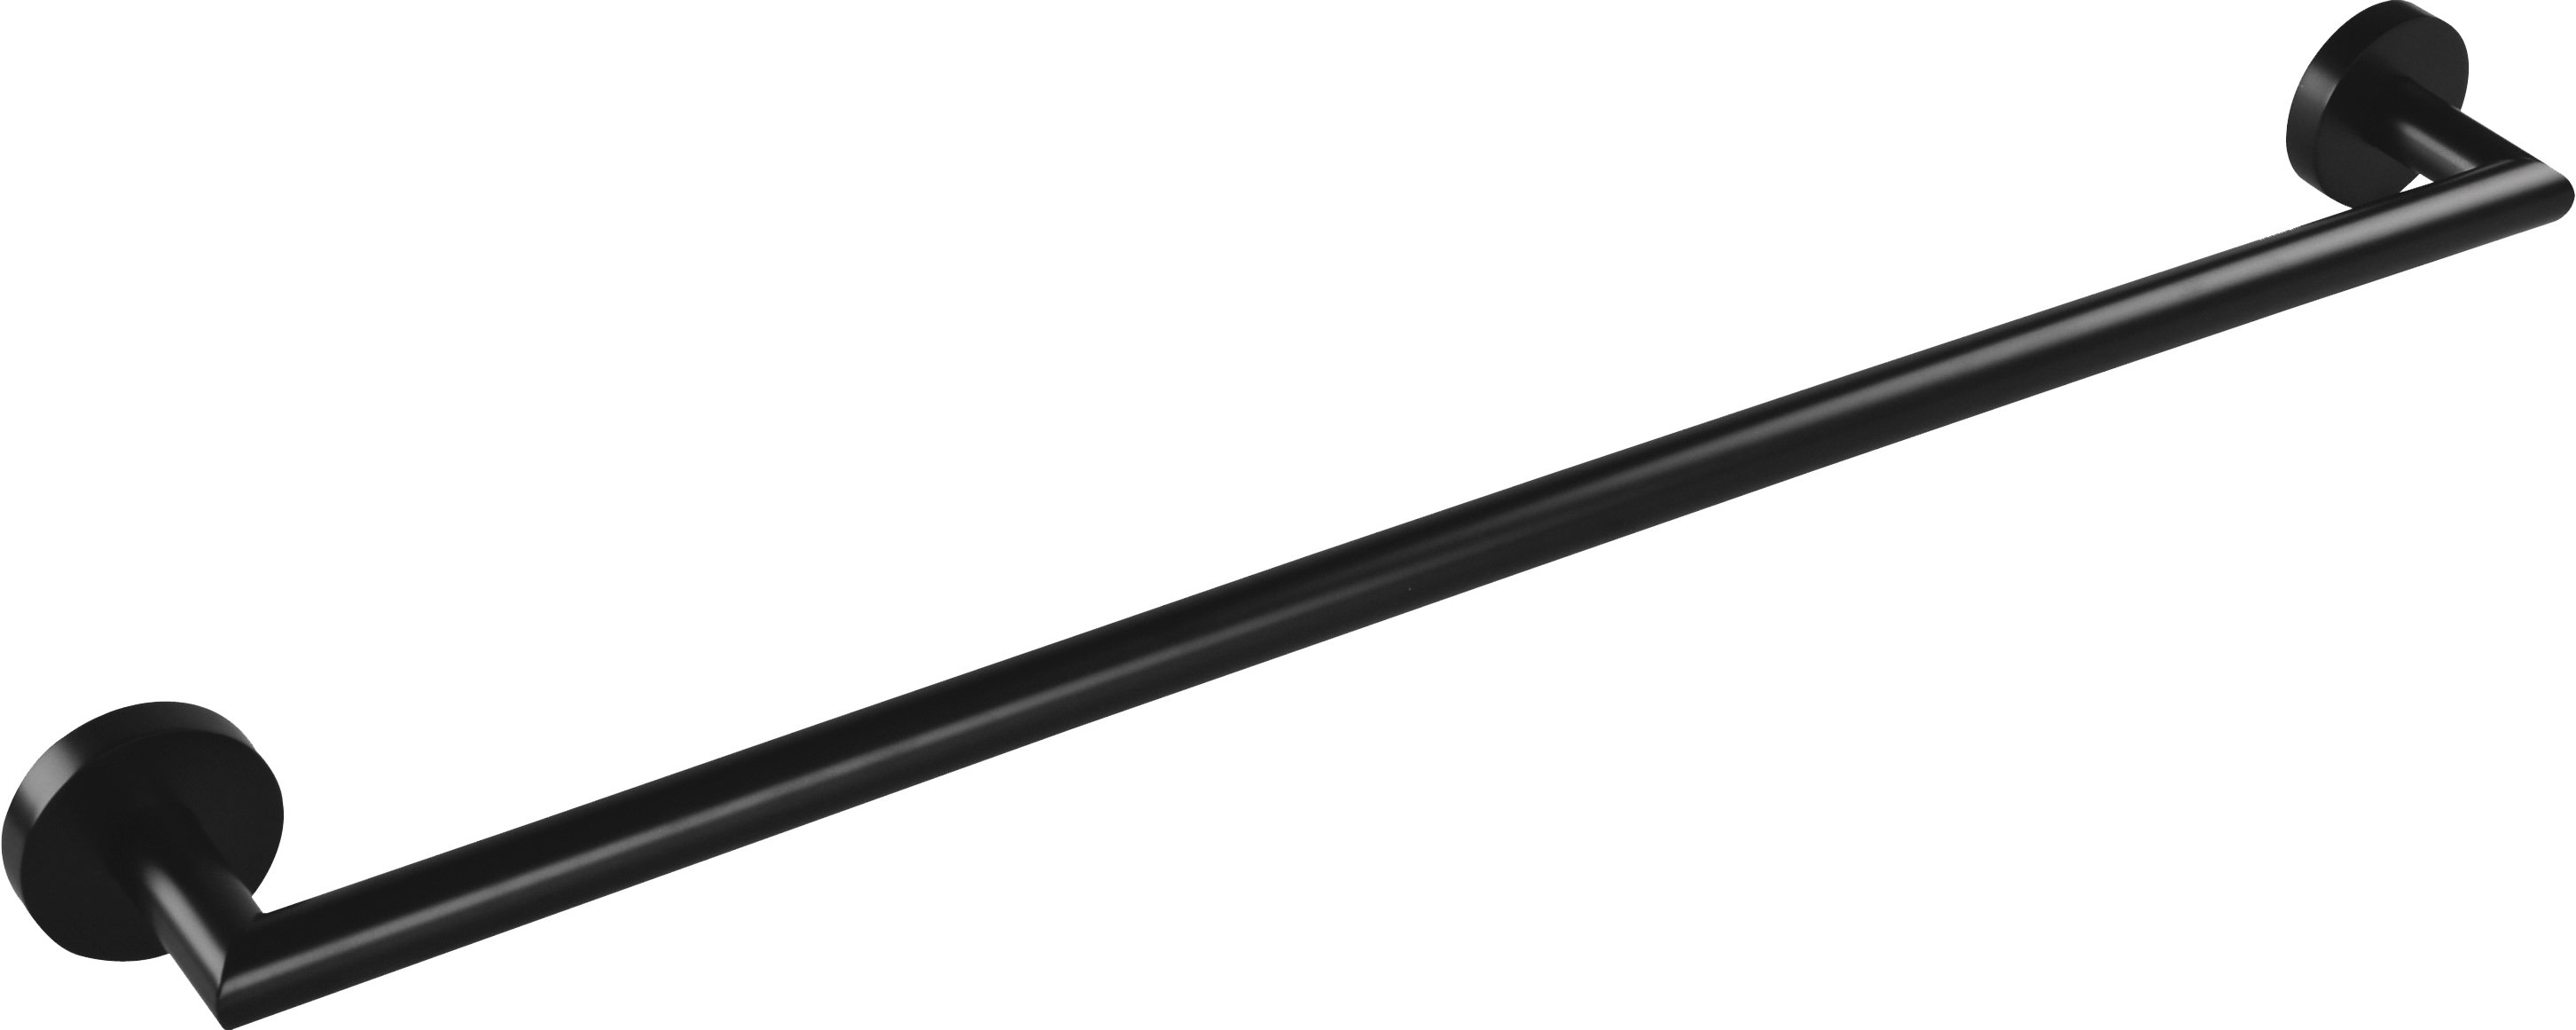 Полотенцедержатель Bemeta Dark (104204040), черный, латунь  - купить со скидкой